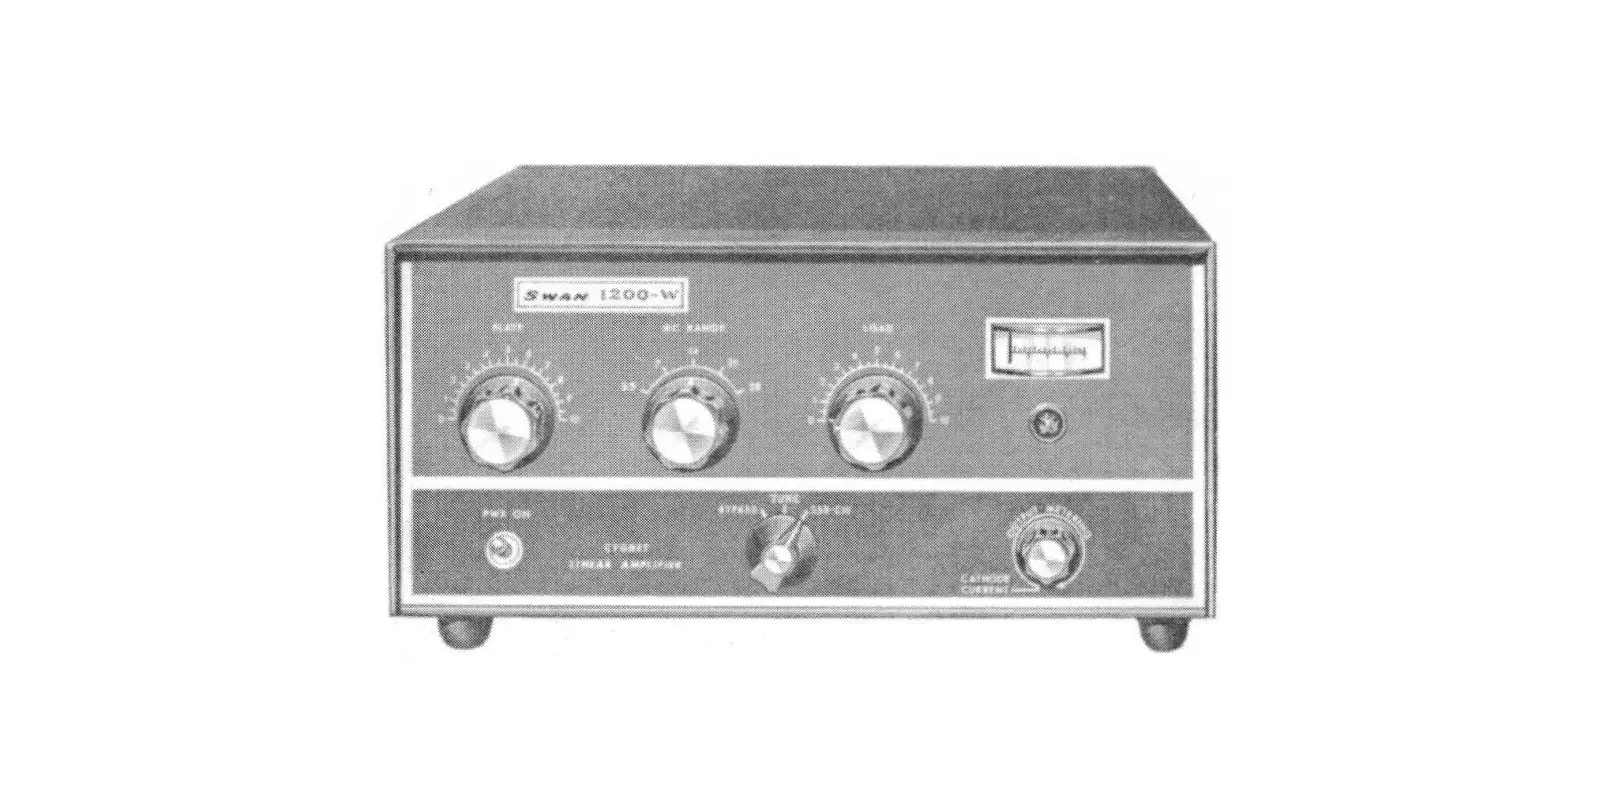 1200-W Cygnet Linear Amplifier